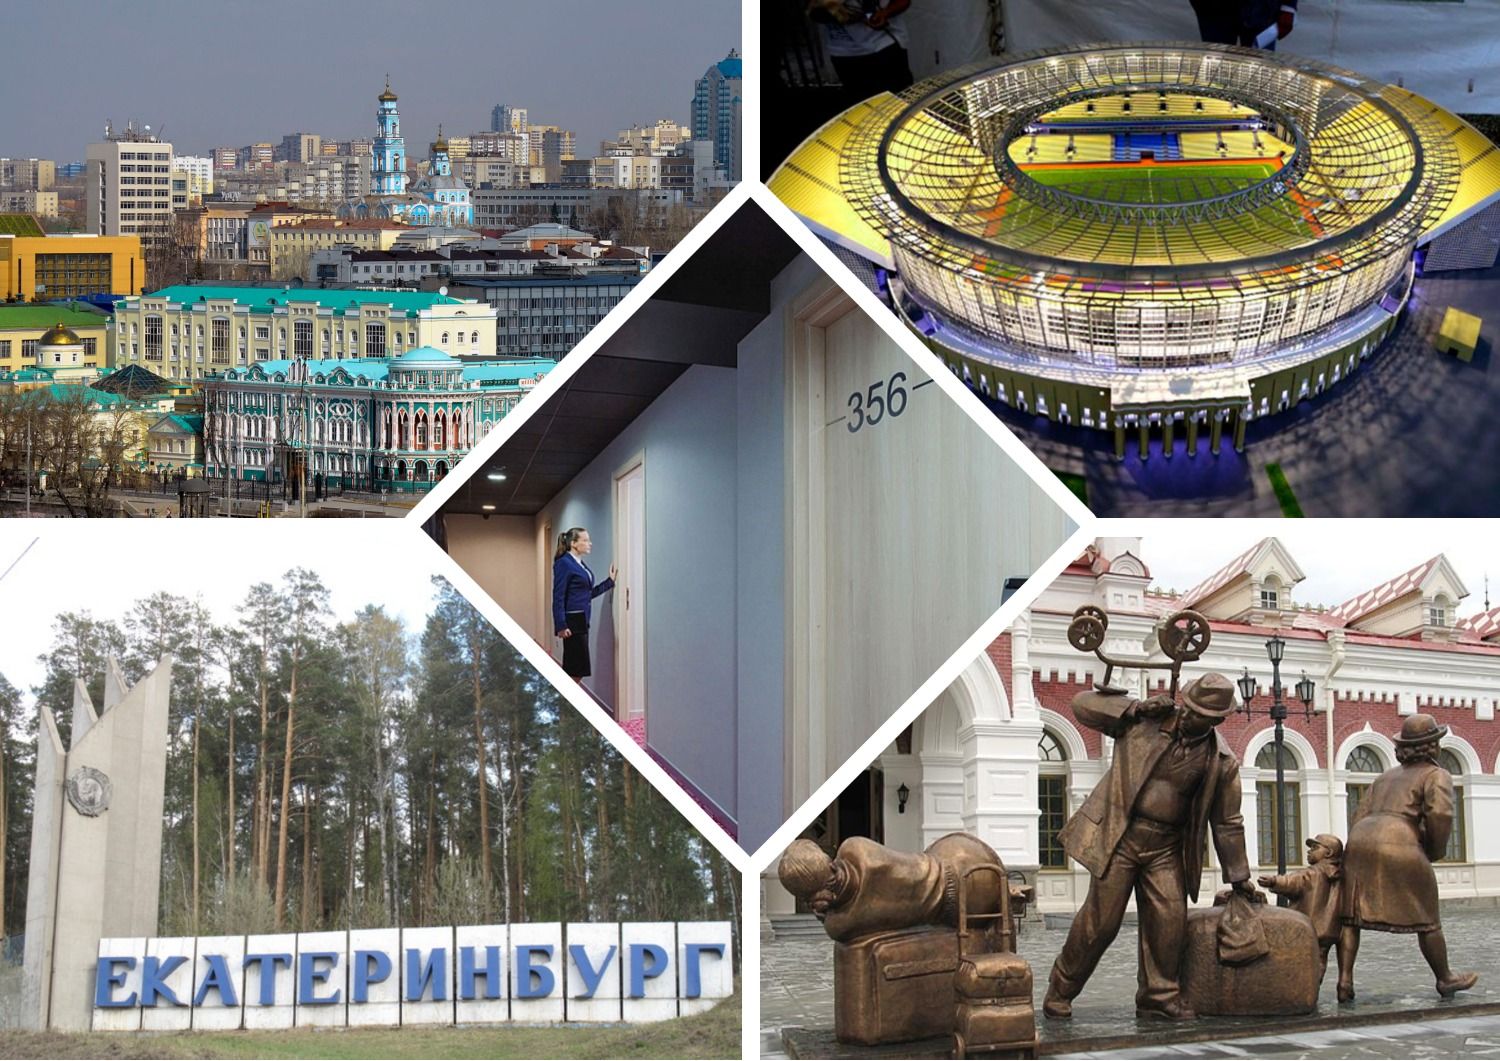 Parhaat halvat hotellit, hotellit, hostellit Jekaterinburgissa vuonna 2020